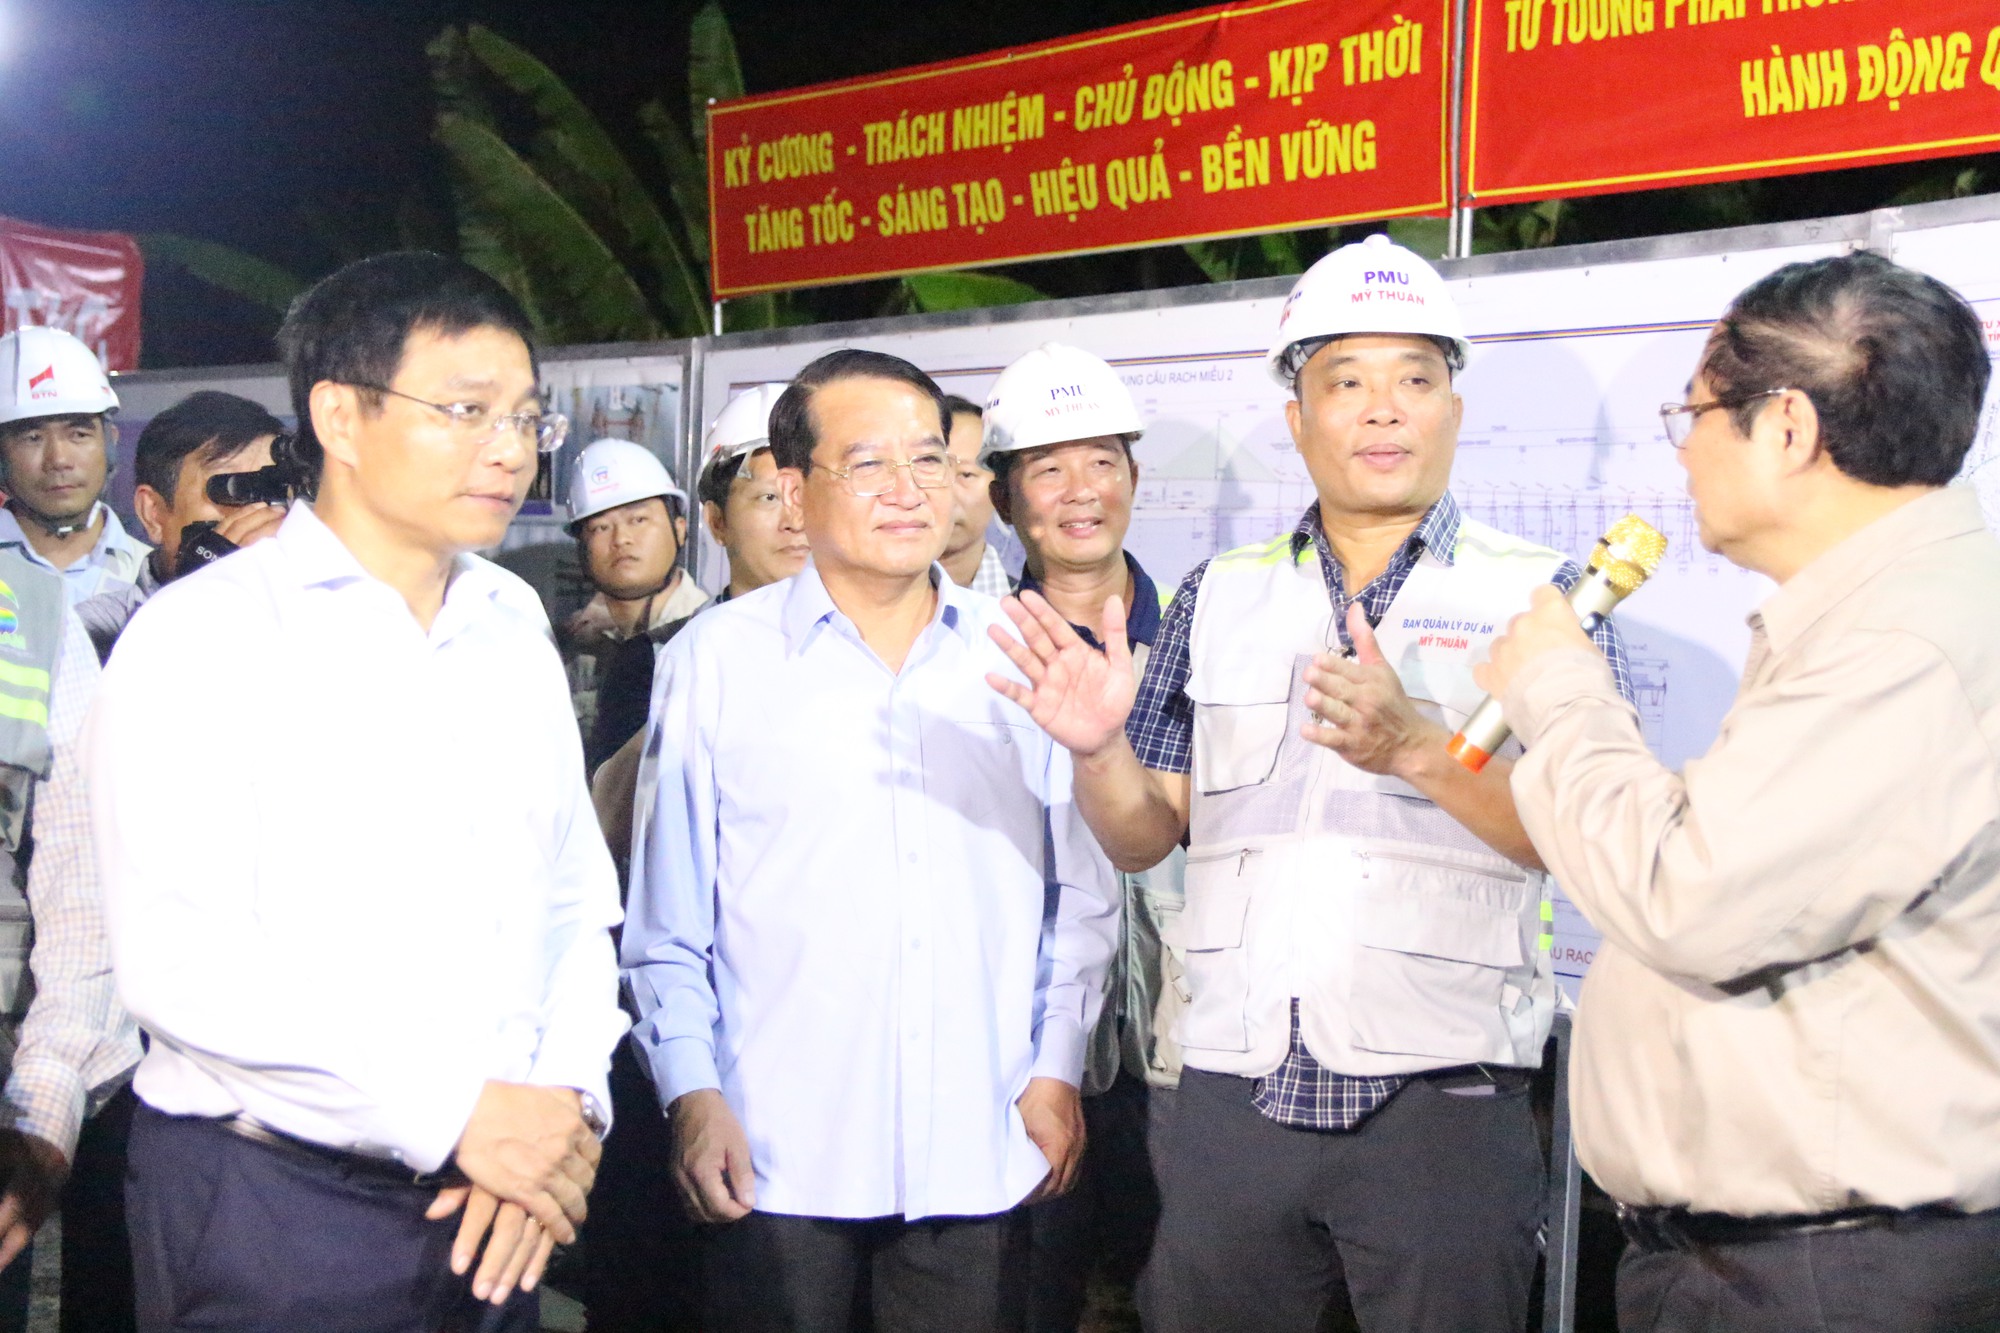 Thủ tướng Chính phủ kiểm tra dự án cầu Rạch Miễu 2 trong đêm- Ảnh 3.